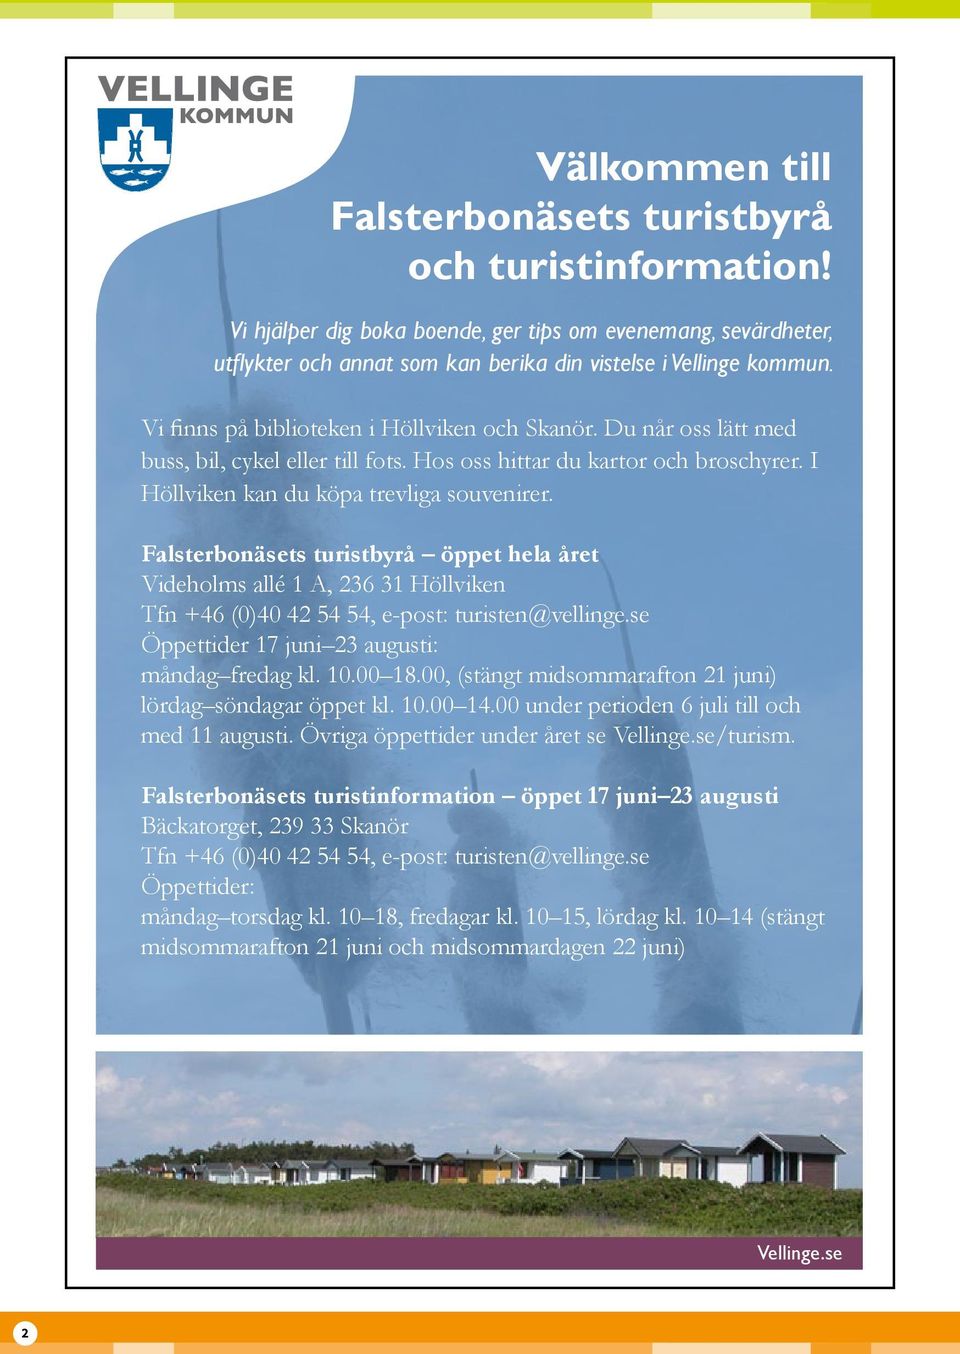 Falsterbonäsets turistbyrå öppet hela året Videholms allé 1 A, 236 31 Höllviken Tfn +46 (0)40 42 54 54, e-post: turisten@vellinge.se Öppettider 17 juni 23 augusti: måndag fredag kl. 10.00 18.